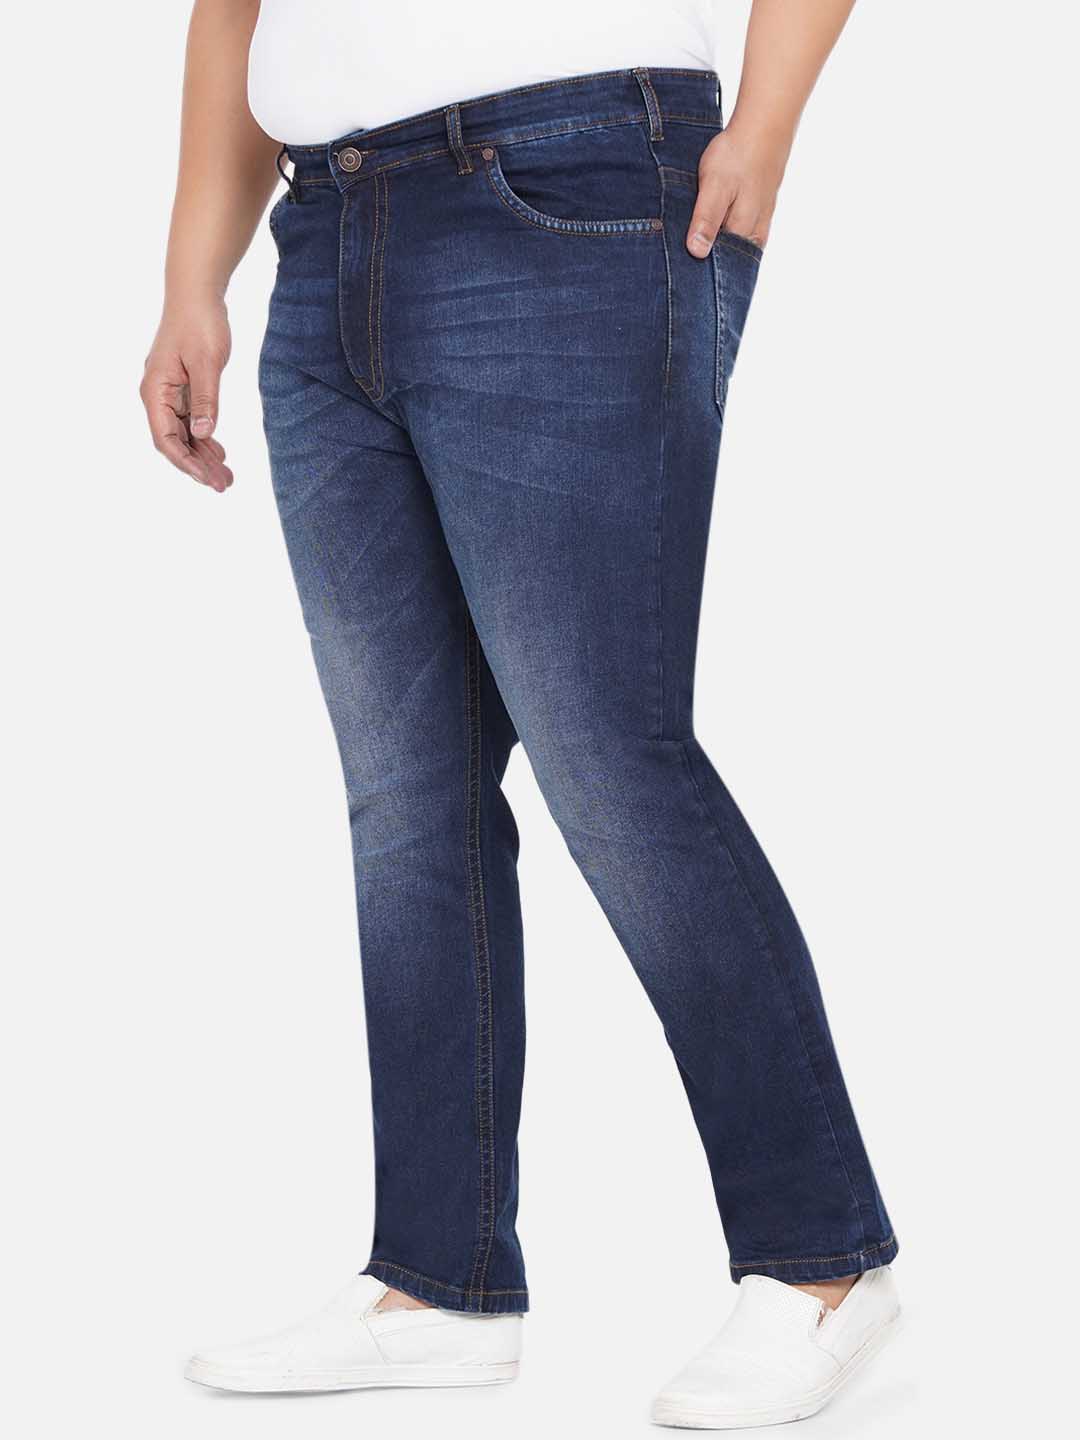 bottomwear/jeans/JPJ12233/jpj12233-4.jpg